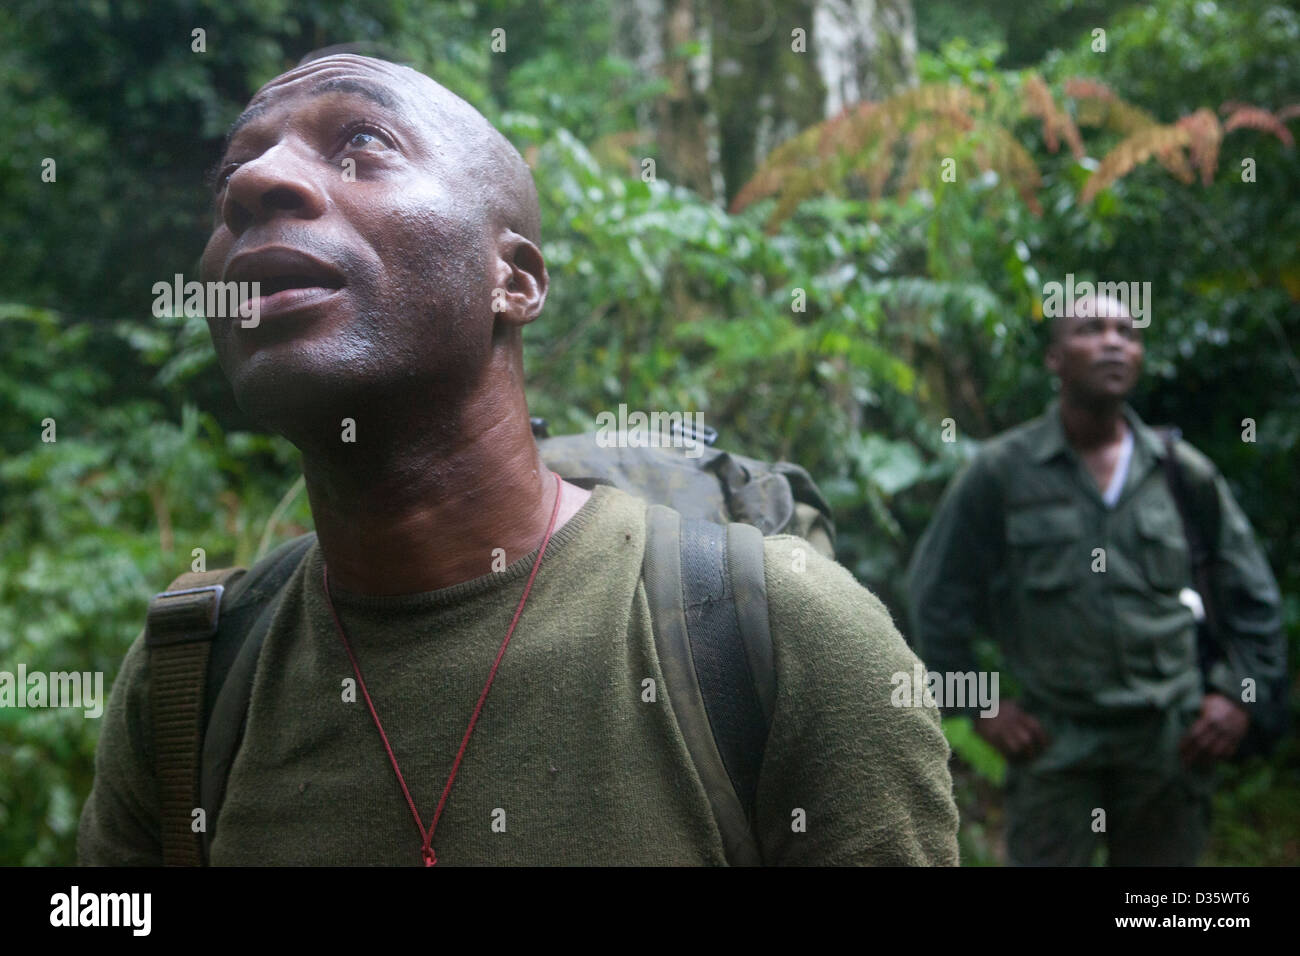 Kongo, 29. September 2012: Ecoguards aus Kamerun und Gabun auf Patrouille der Messok Dja Nationalpark anhören Affen oben aufrufen. Stockfoto